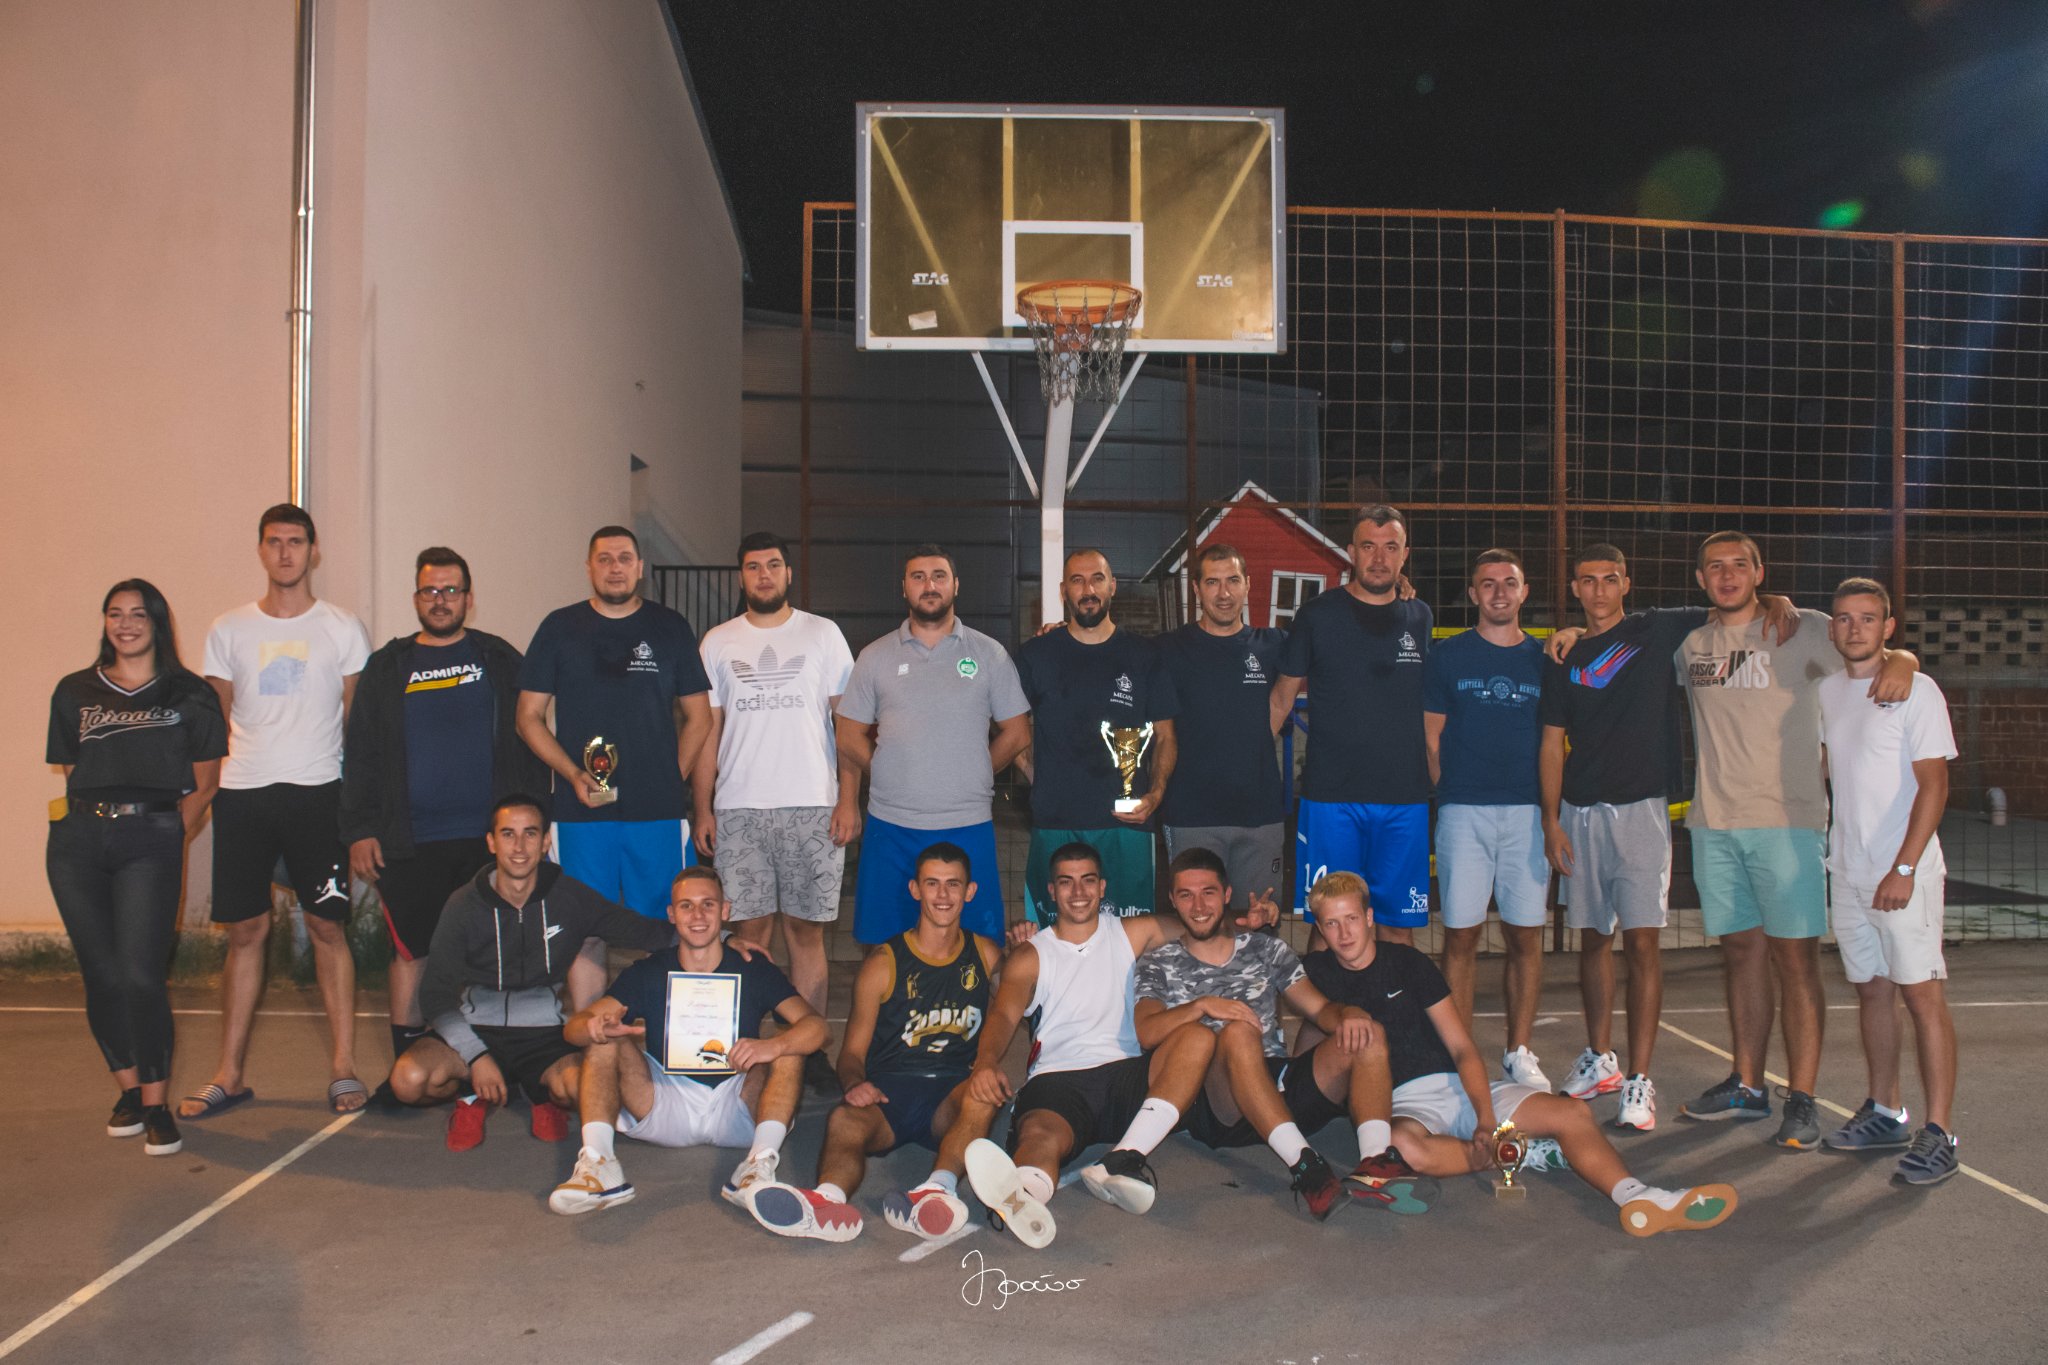 U Jovcu juče završen turnir u malom fudbalu, a basket turnir osvojili Paraćinci